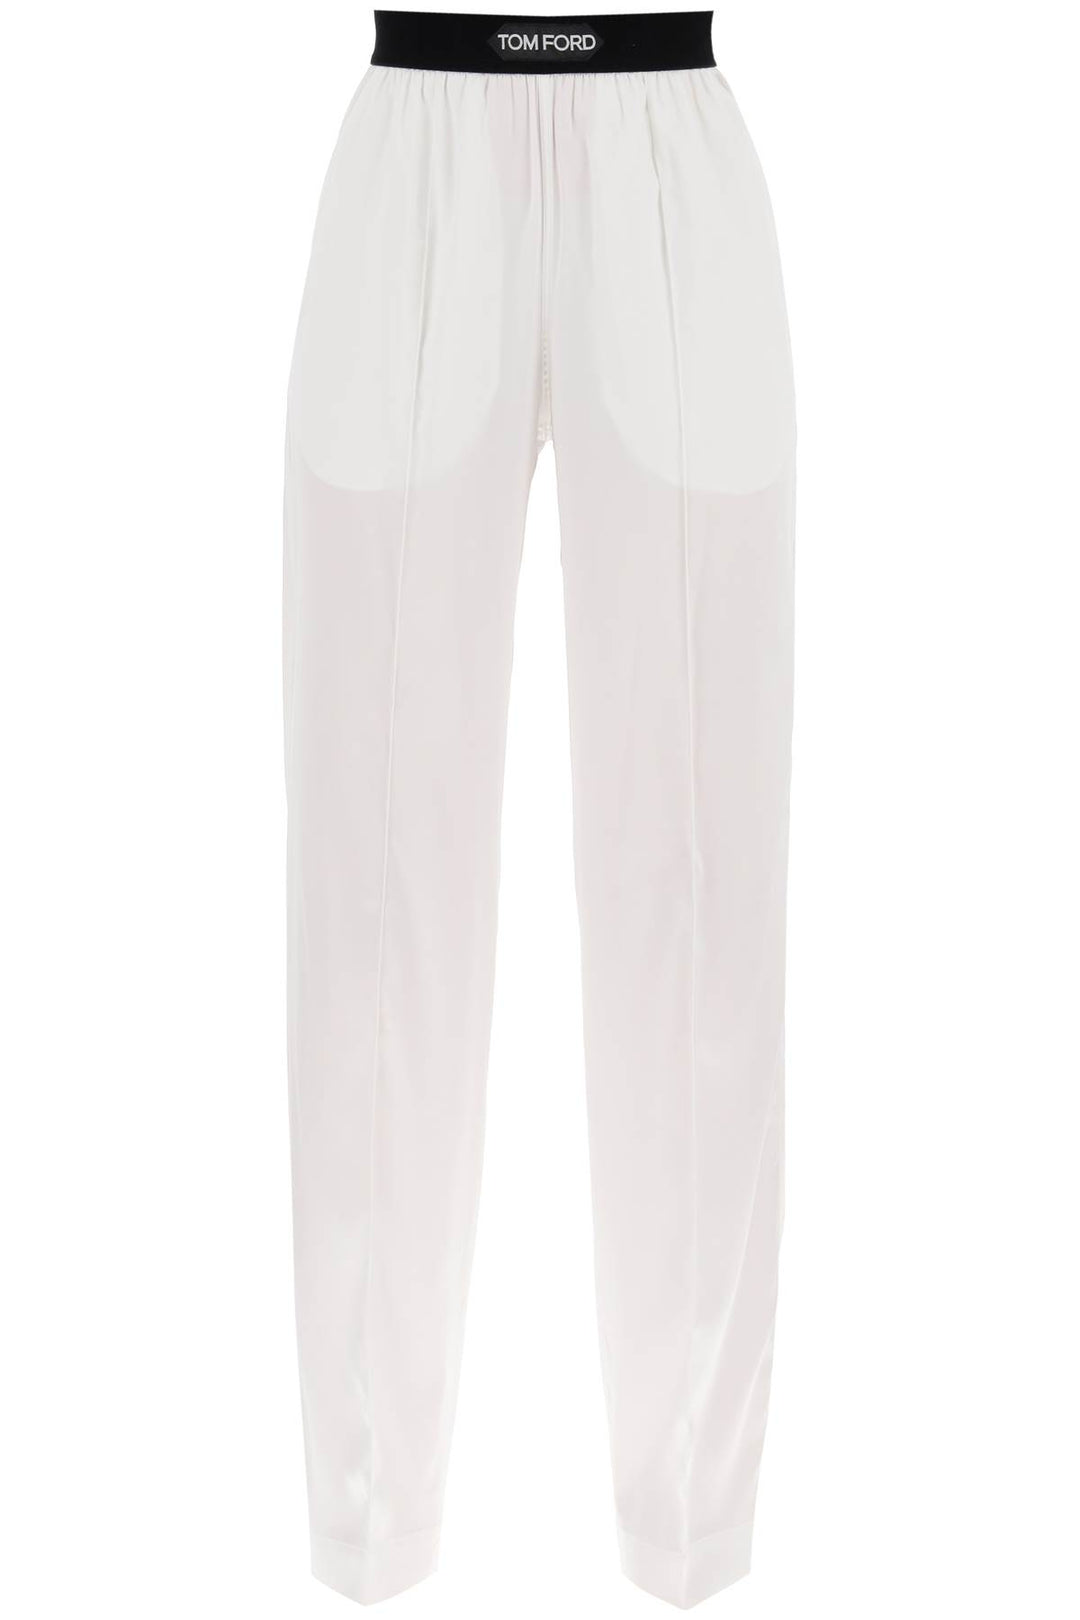 silk pajama pants-0